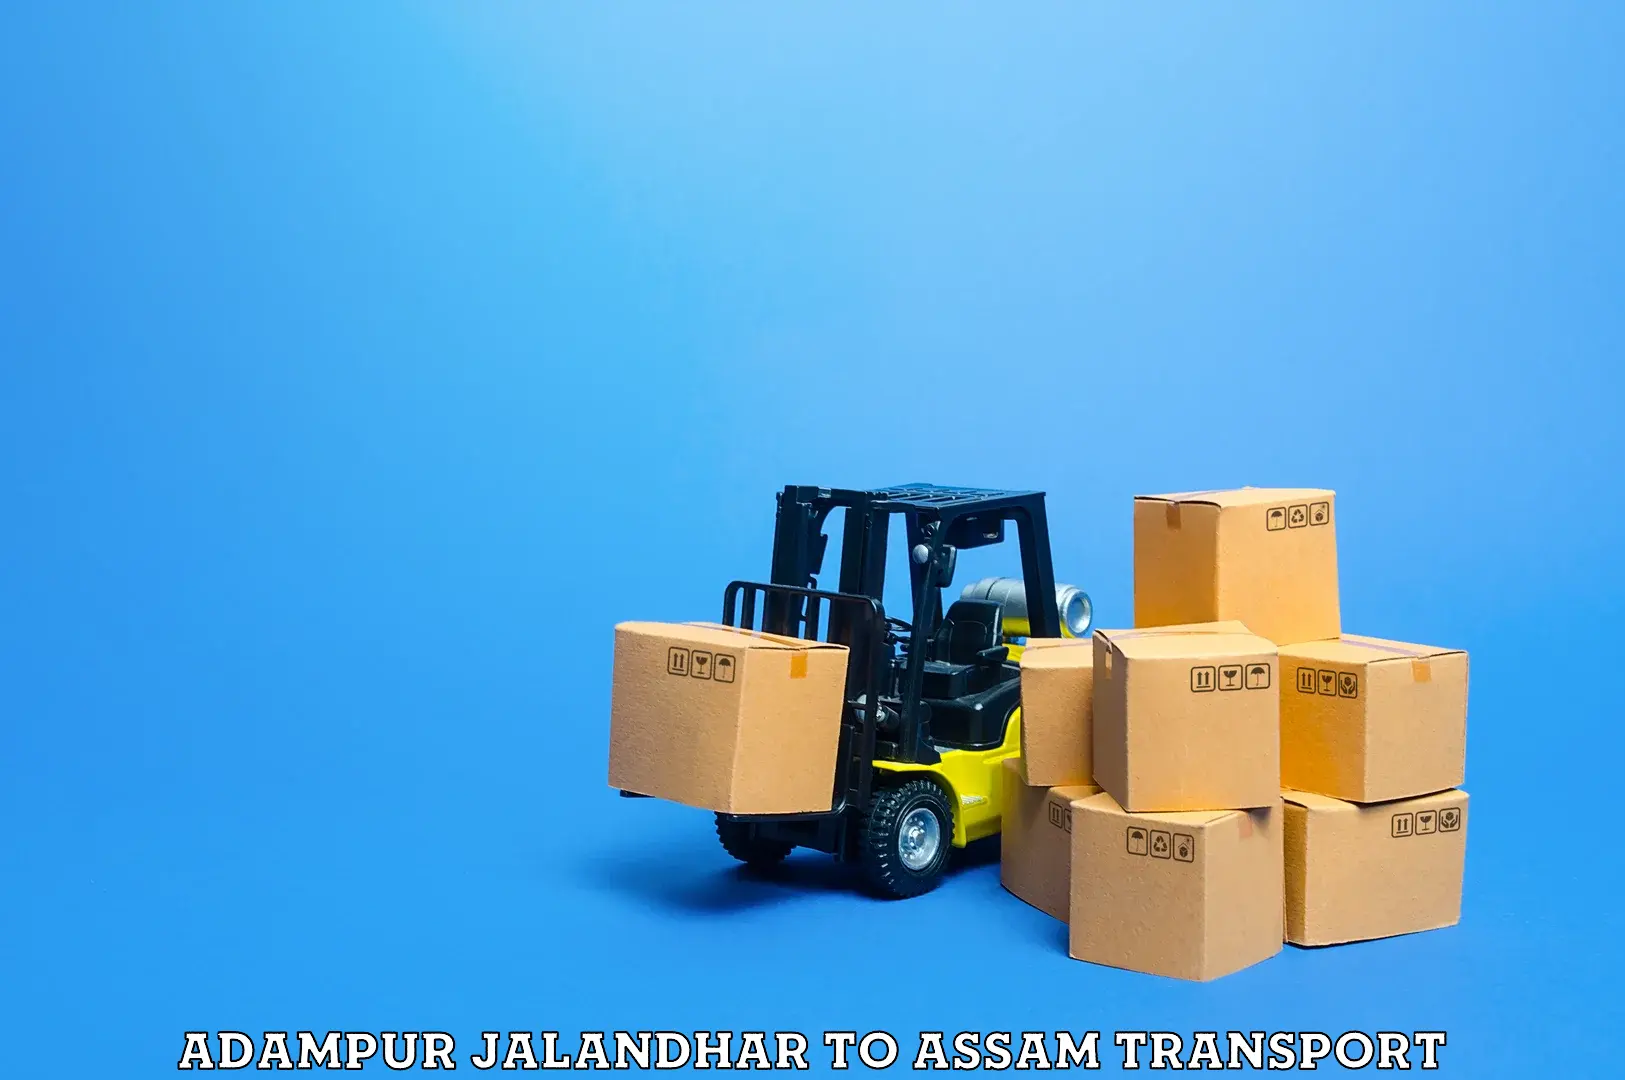 Commercial transport service Adampur Jalandhar to Assam